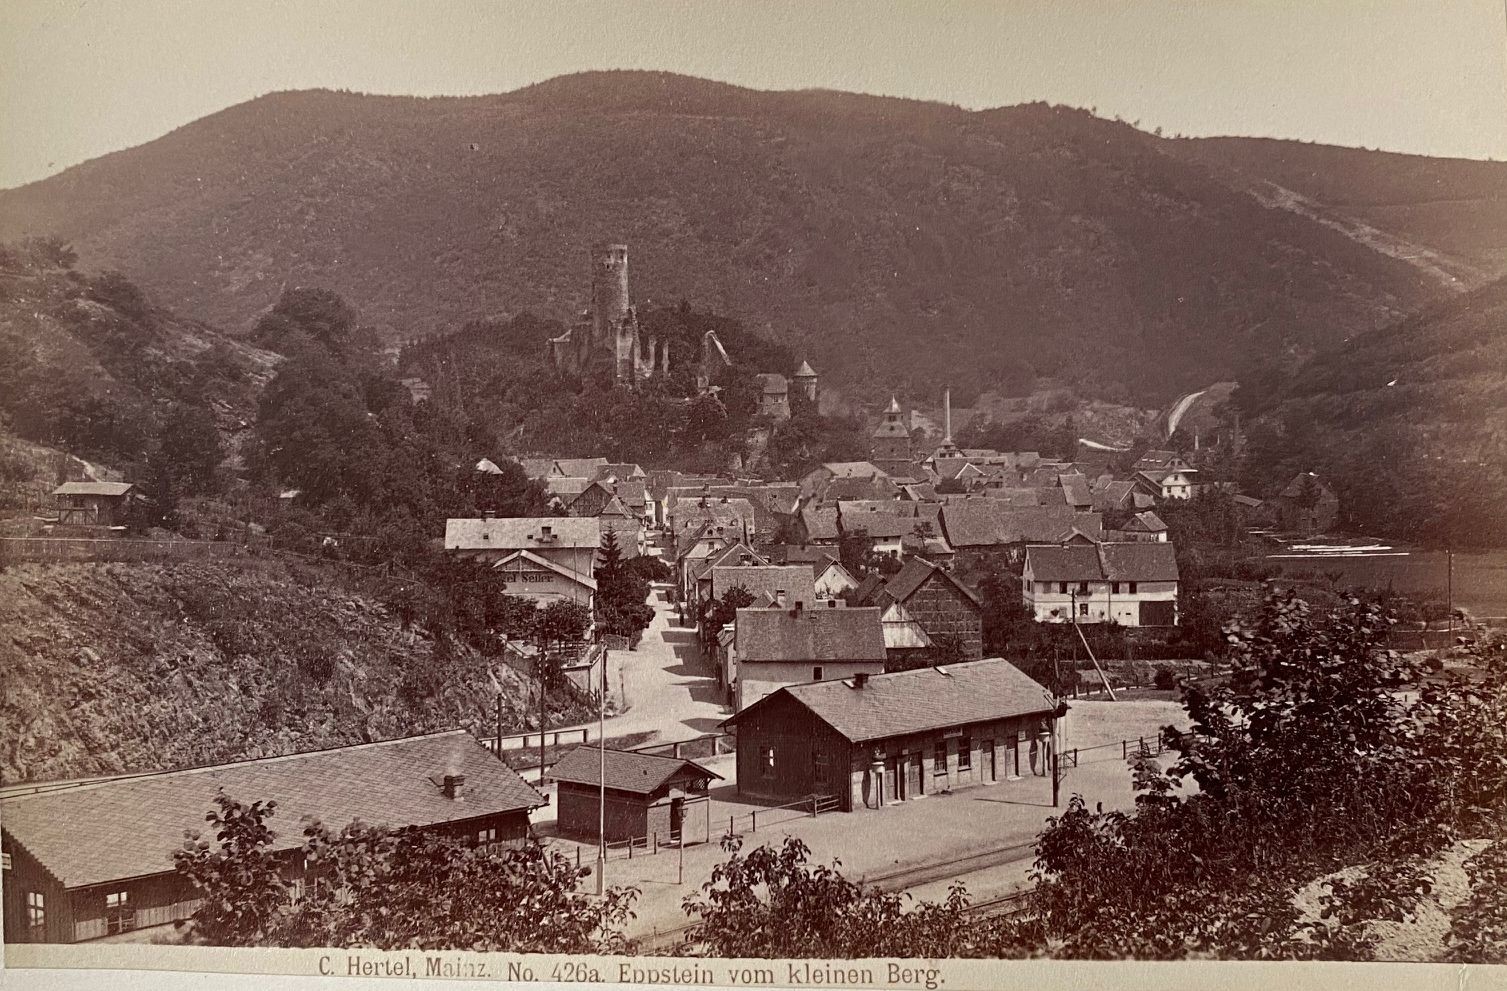 Fotografie, Carl Hertel No. 426a, Eppstein vom kleinen Berg, ca. 1885 (Taunus-Rhein-Main - Regionalgeschichtliche Sammlung Dr. Stefan Naas CC BY-NC-SA)